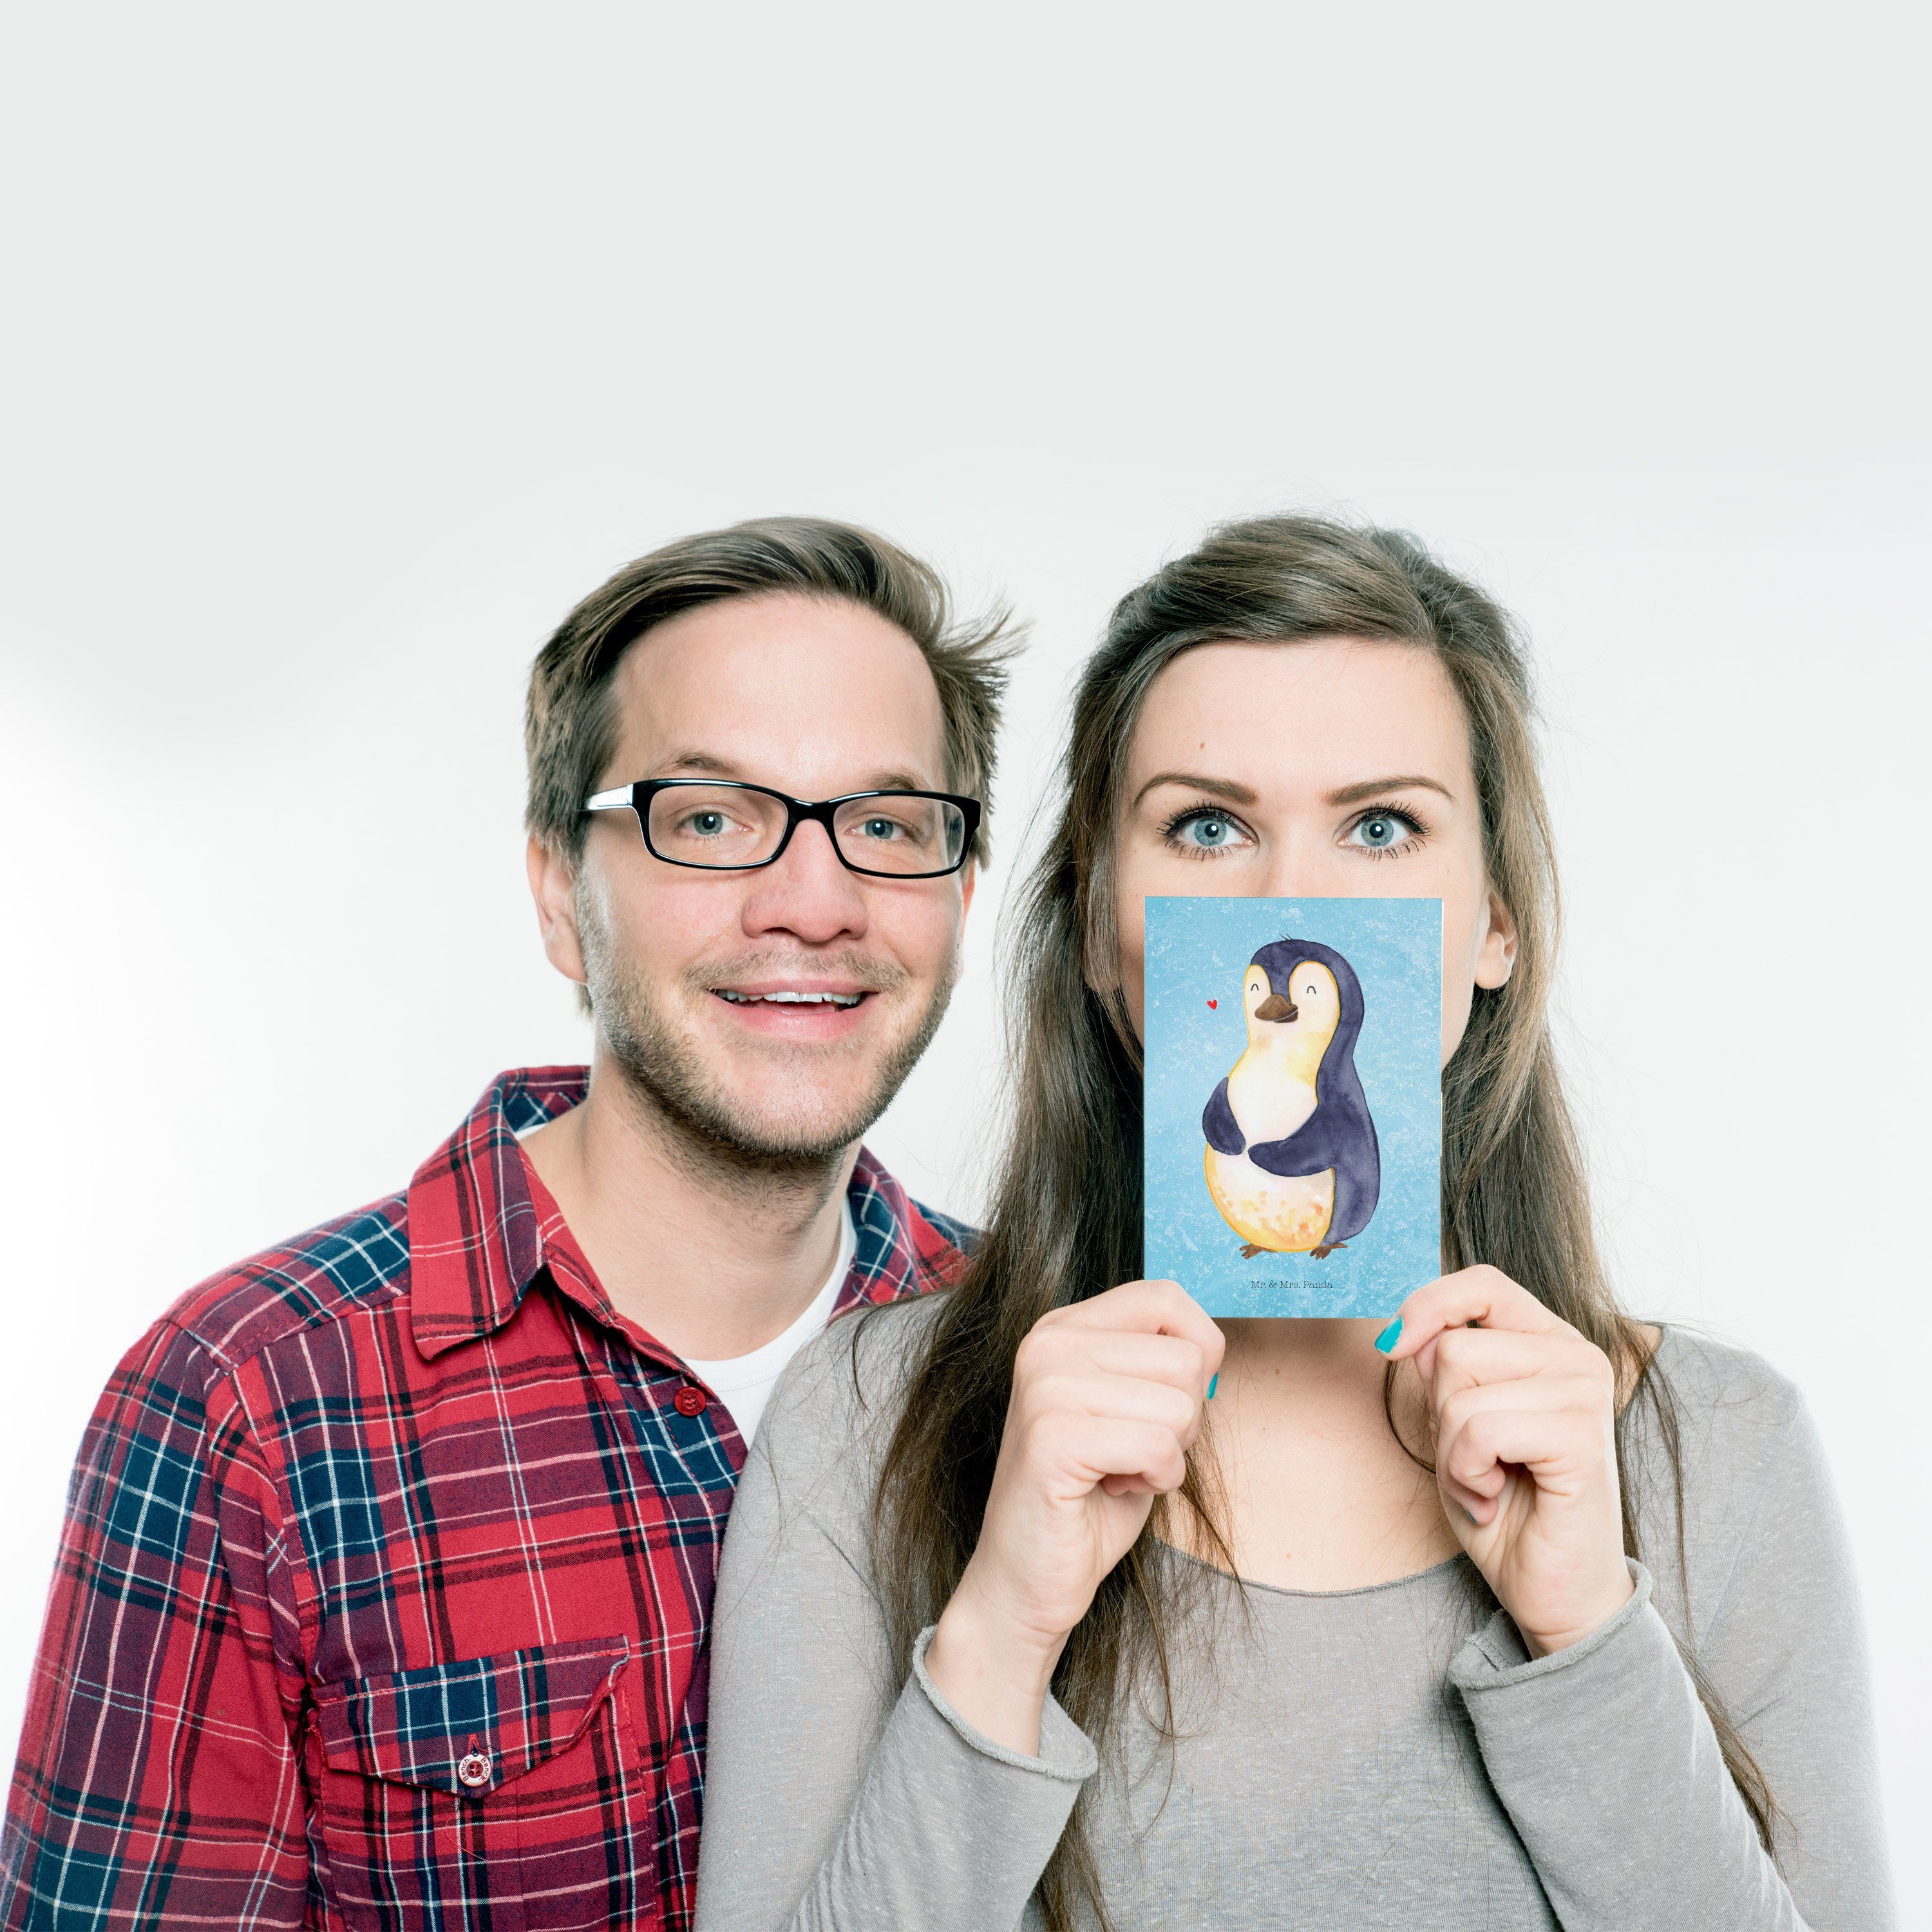 Mr. & Mrs. Panda Geschenk, Karte, Postkarte Pinguin Geschenkkart Eisblau - - Selbstrespekt, Diät